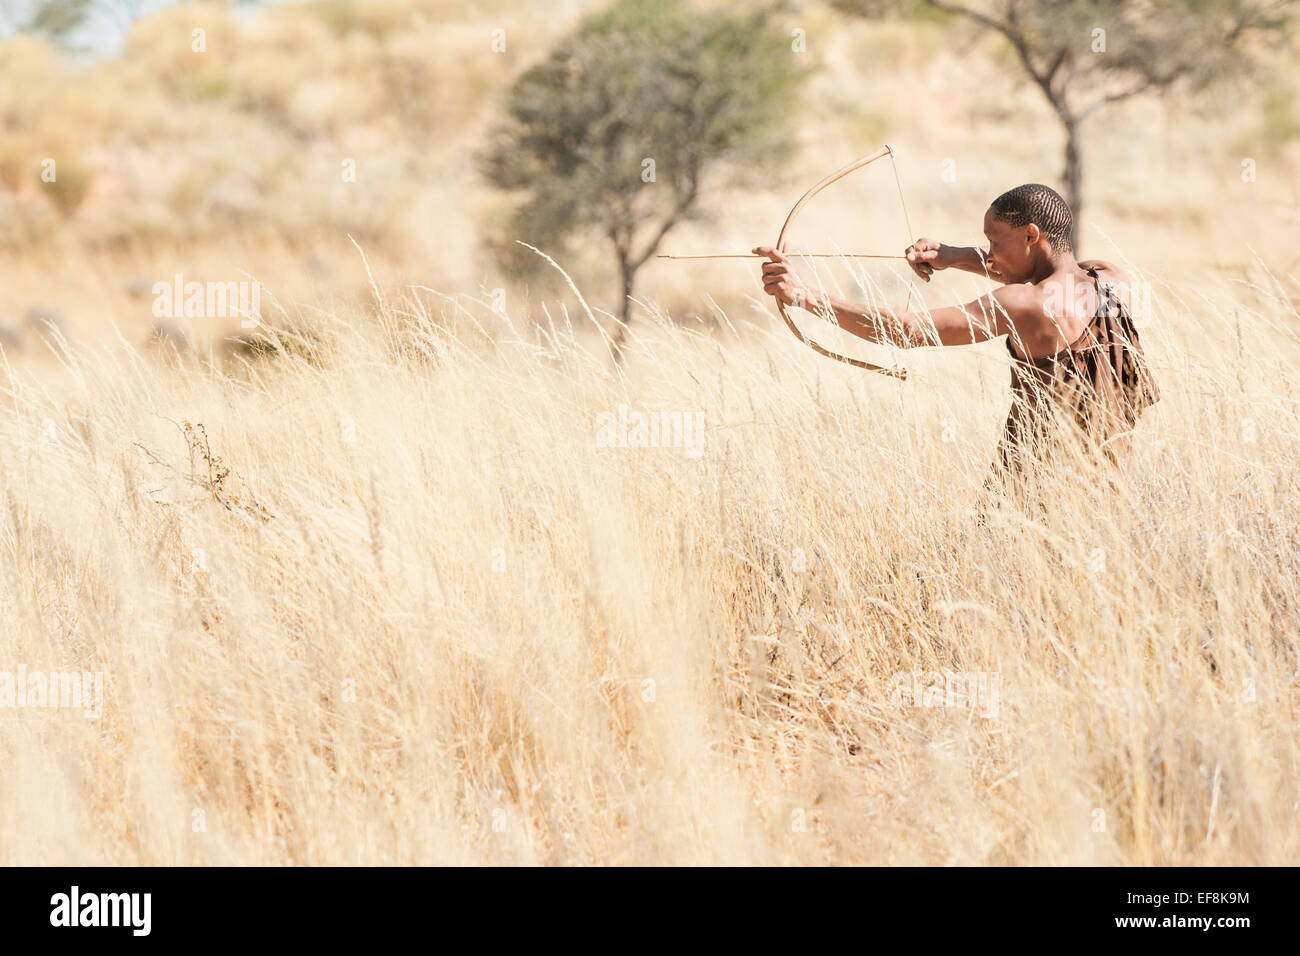 Un Boscimani in piedi di alte erbe del Kalahari utilizza un arco e frecce su una battuta di caccia, Namibia del sud Africa Foto Stock